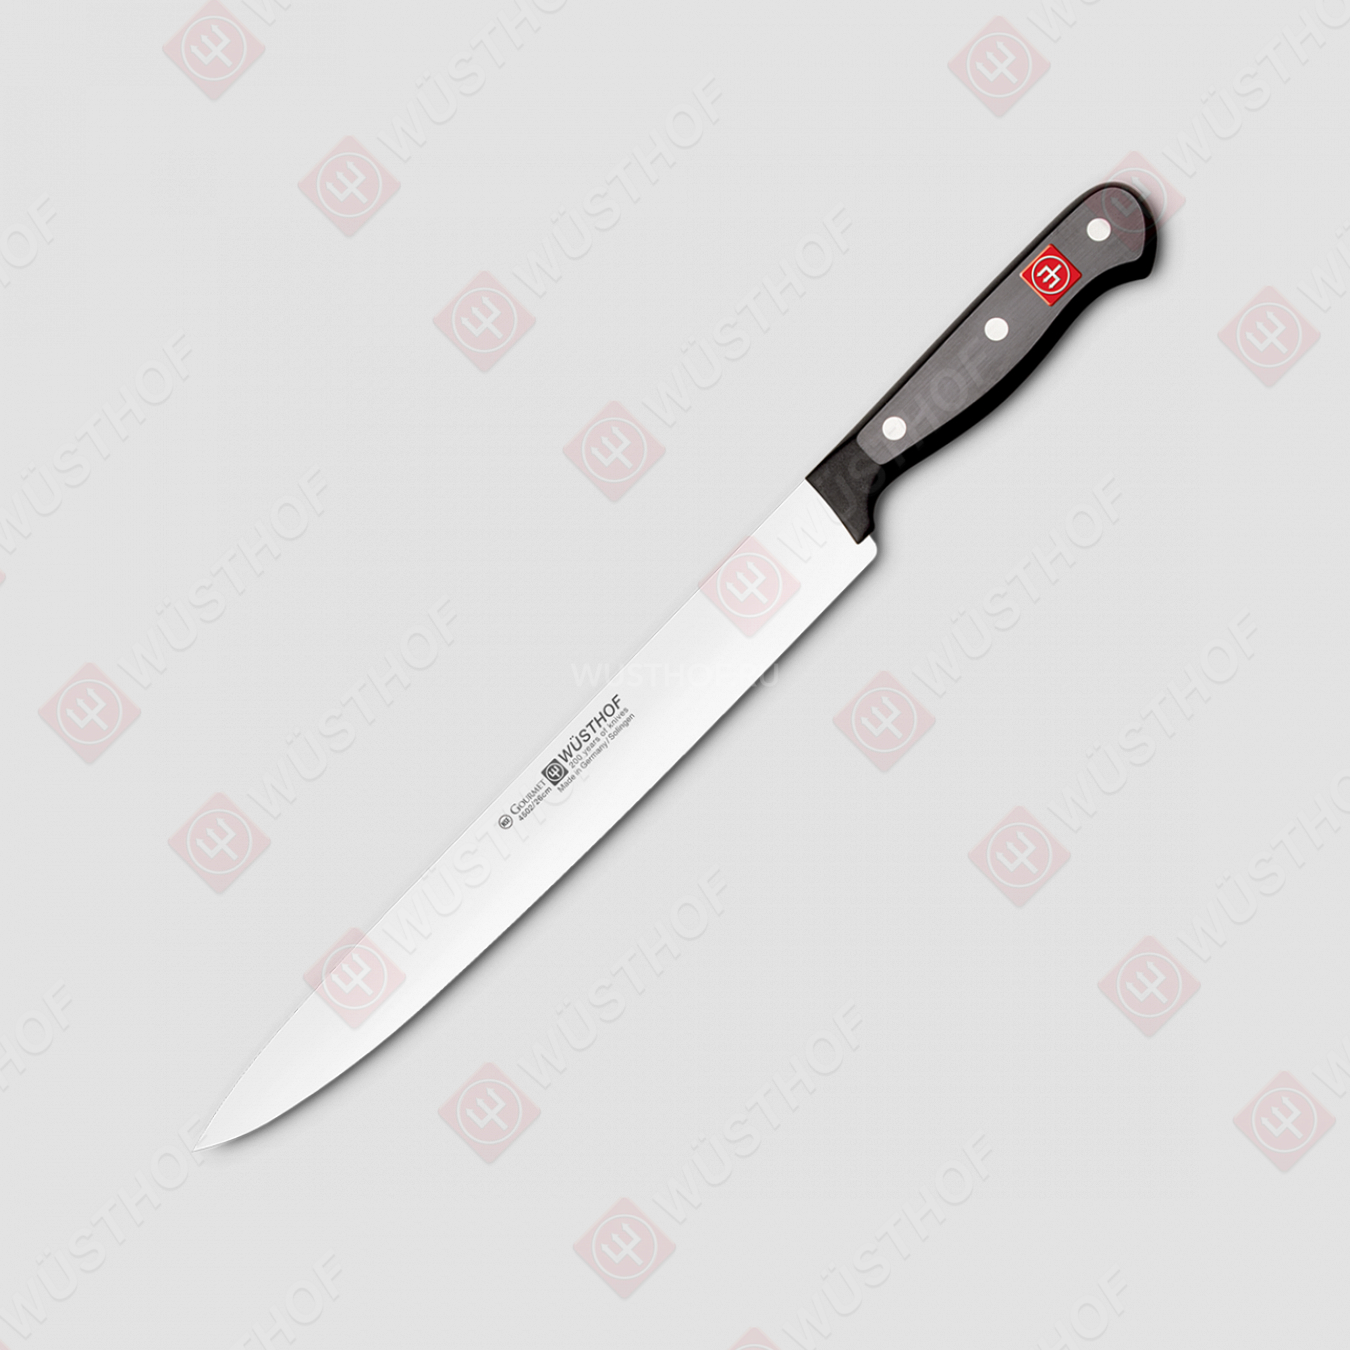 Нож для разделки 26 см, серия Gourmet, WUESTHOF, Германия